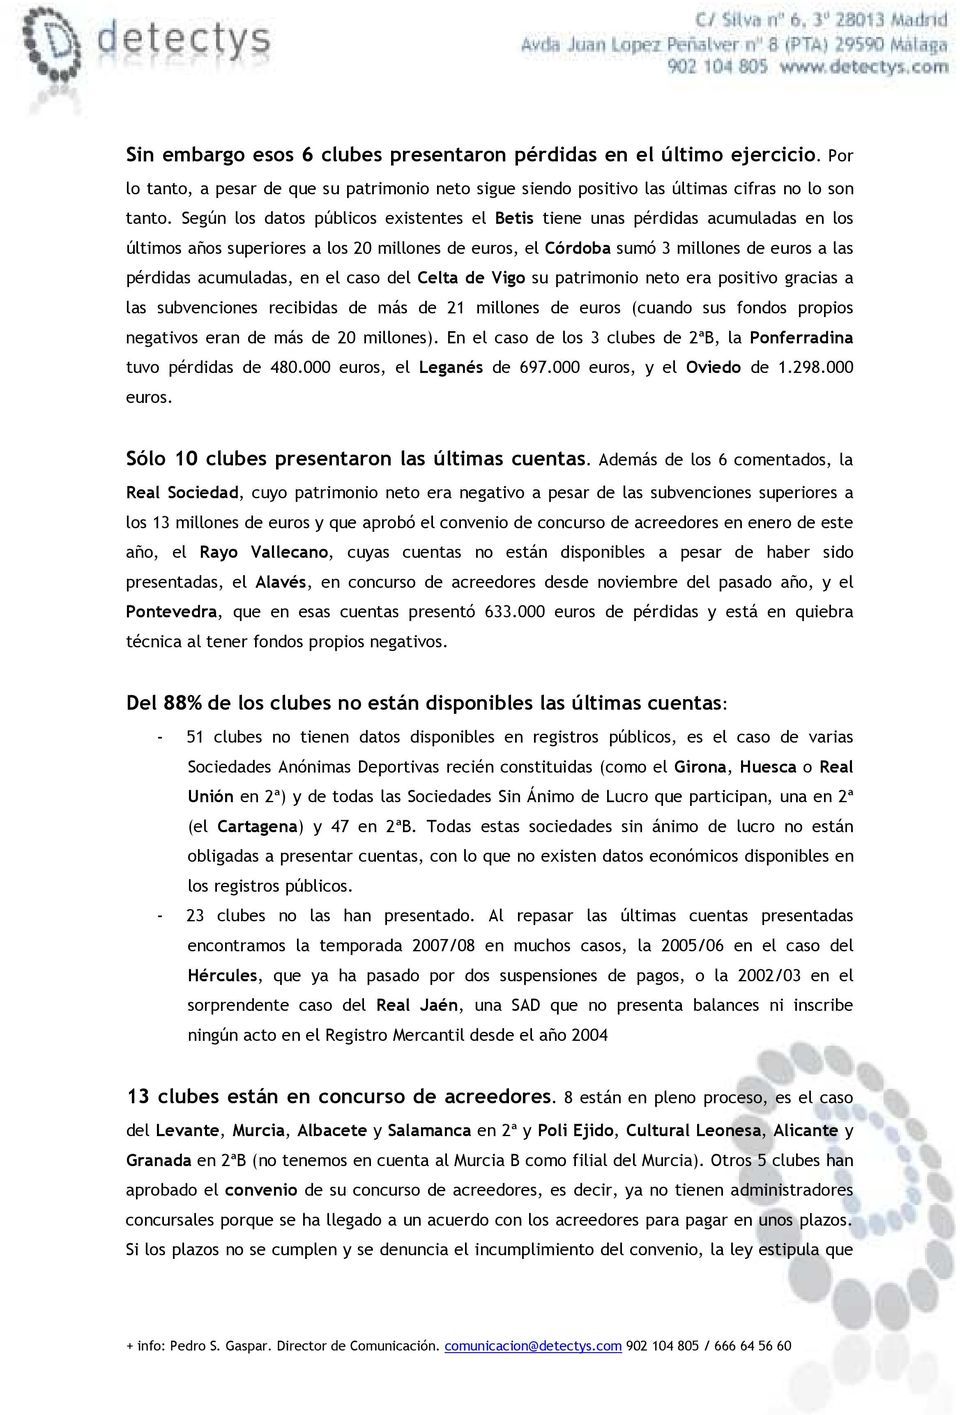 en el caso del Celta de Vigo su patrimonio neto era positivo gracias a las subvenciones recibidas de más de 21 millones de euros (cuando sus fondos propios negativos eran de más de 20 millones).